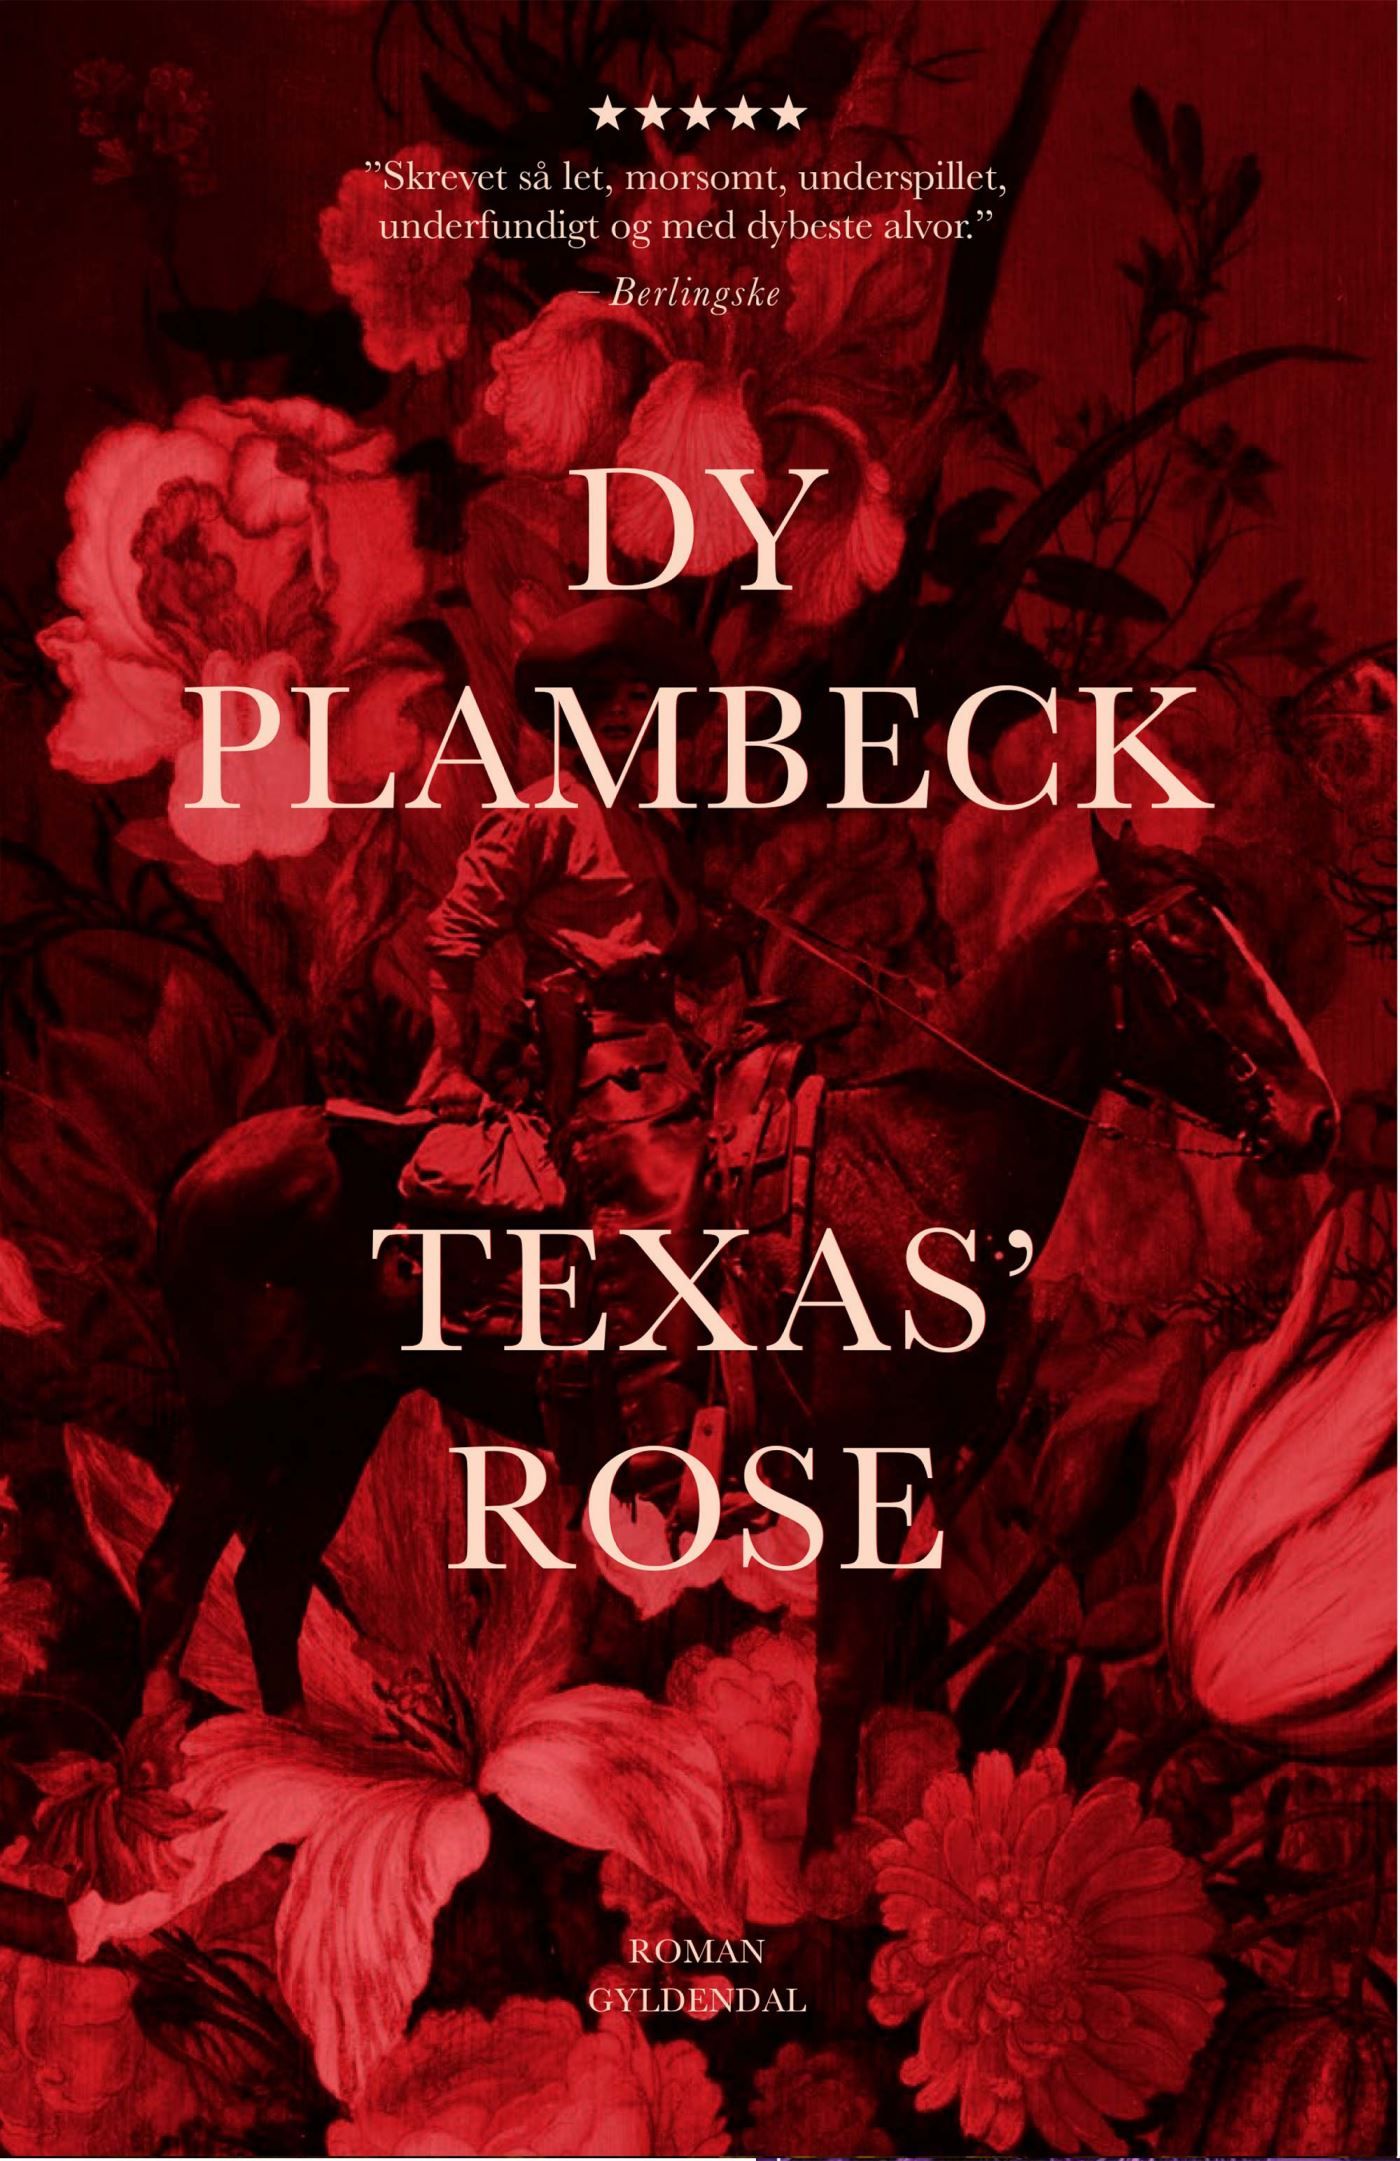 Texas' rose, ljudbok av Dy Plambeck